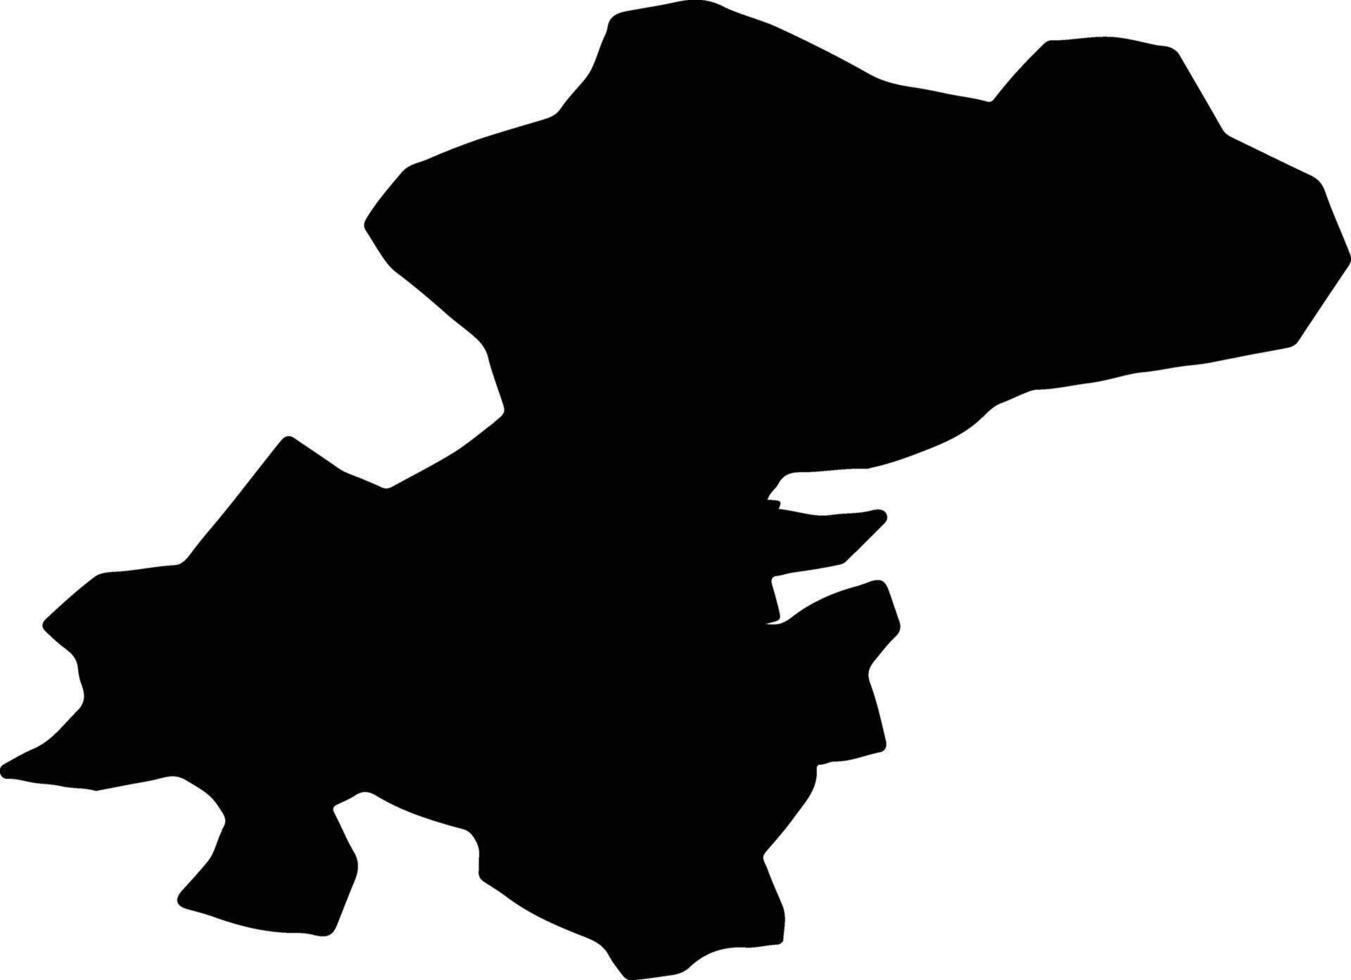 Xocavand Azerbaijan silhouette map vector